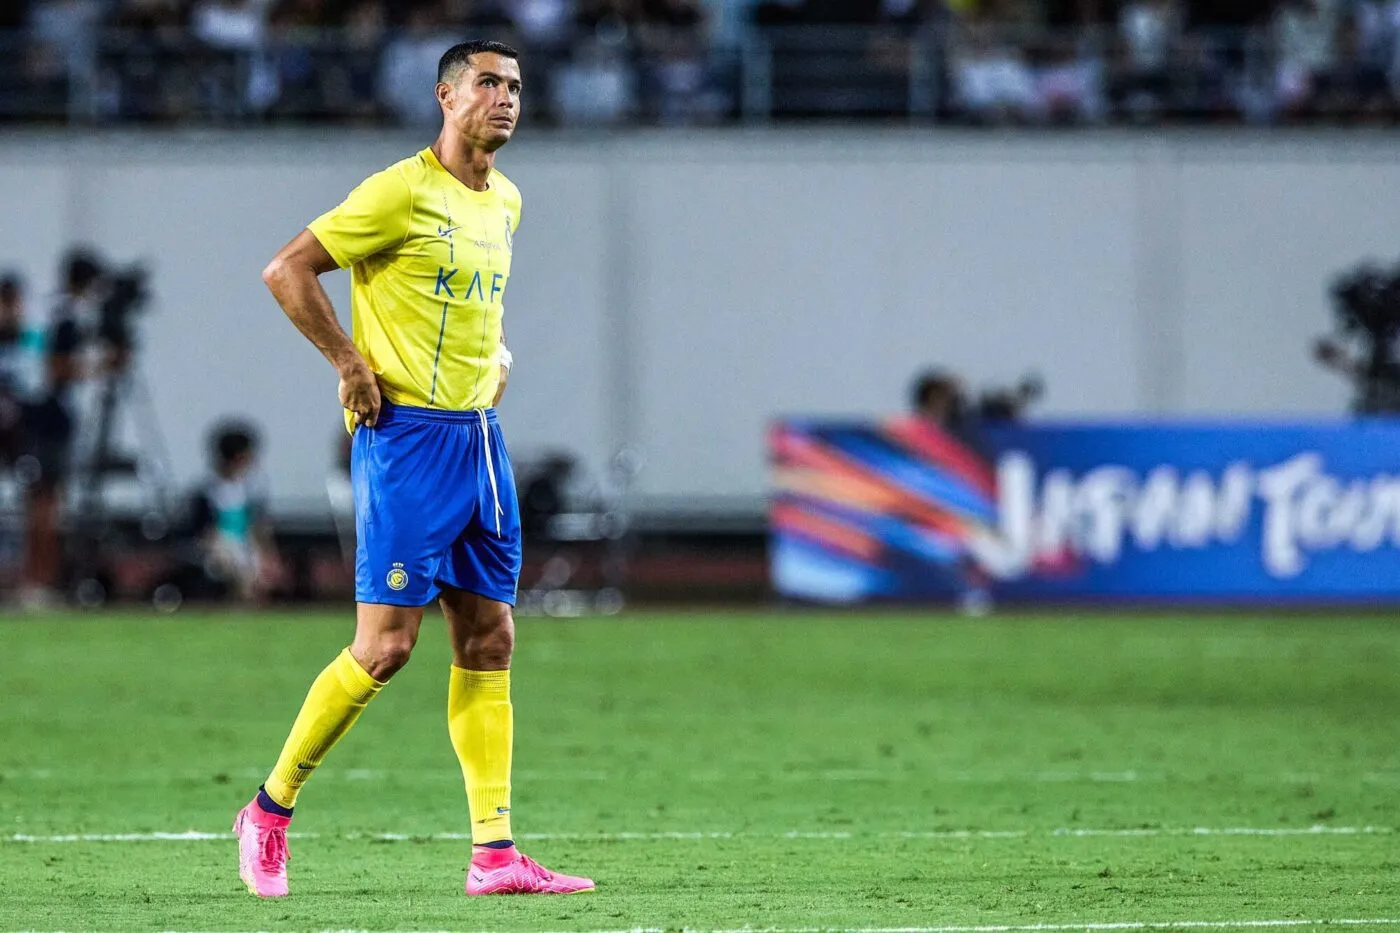 Cristiano Ronaldo invite d&rsquo;autres joueurs à le rejoindre en Arabie saoudite